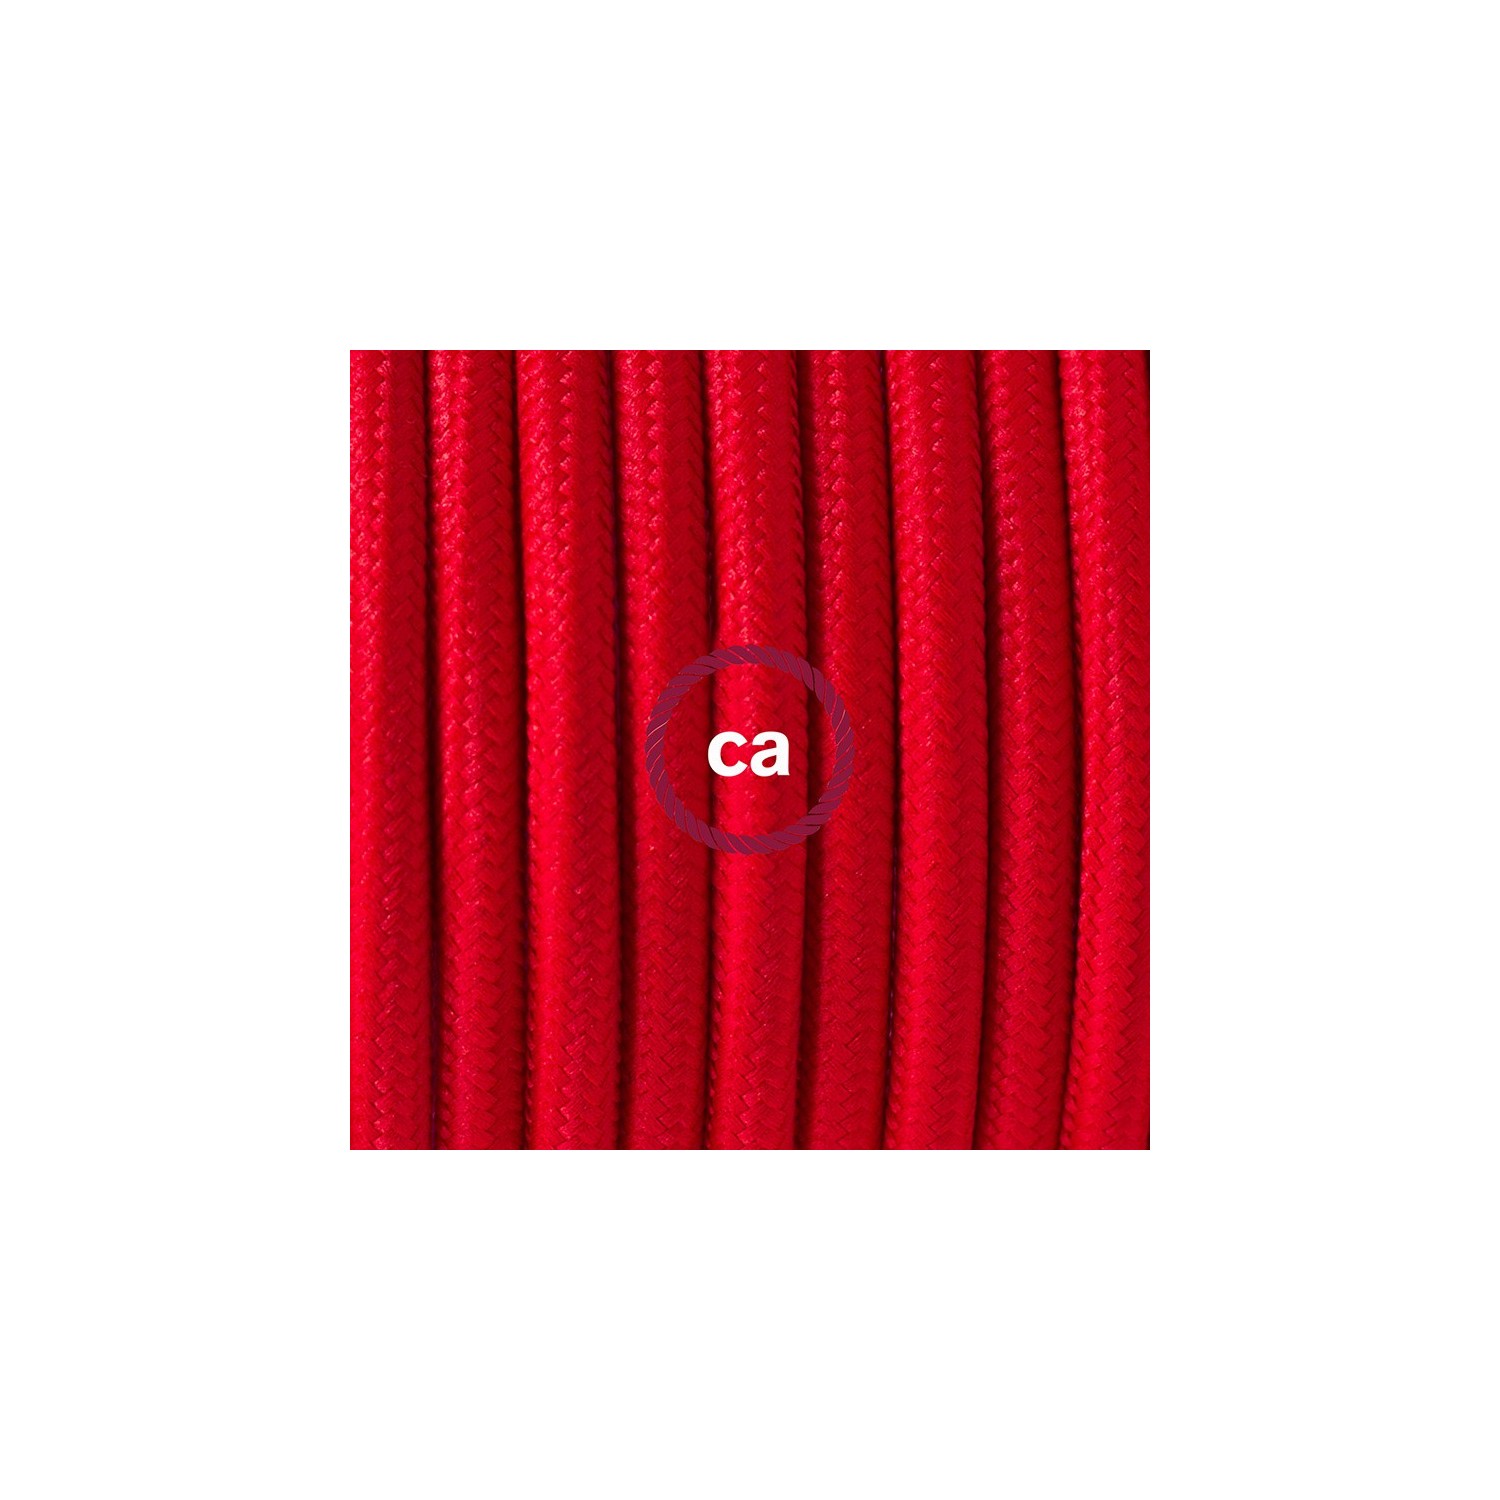 Καλωδίωση πορτατίφ με Υφασμάτινο Καλώδιο RM09 Κόκκινο - 1.80 m. Με ενδιάμεσο διακοπτάκι και φις.